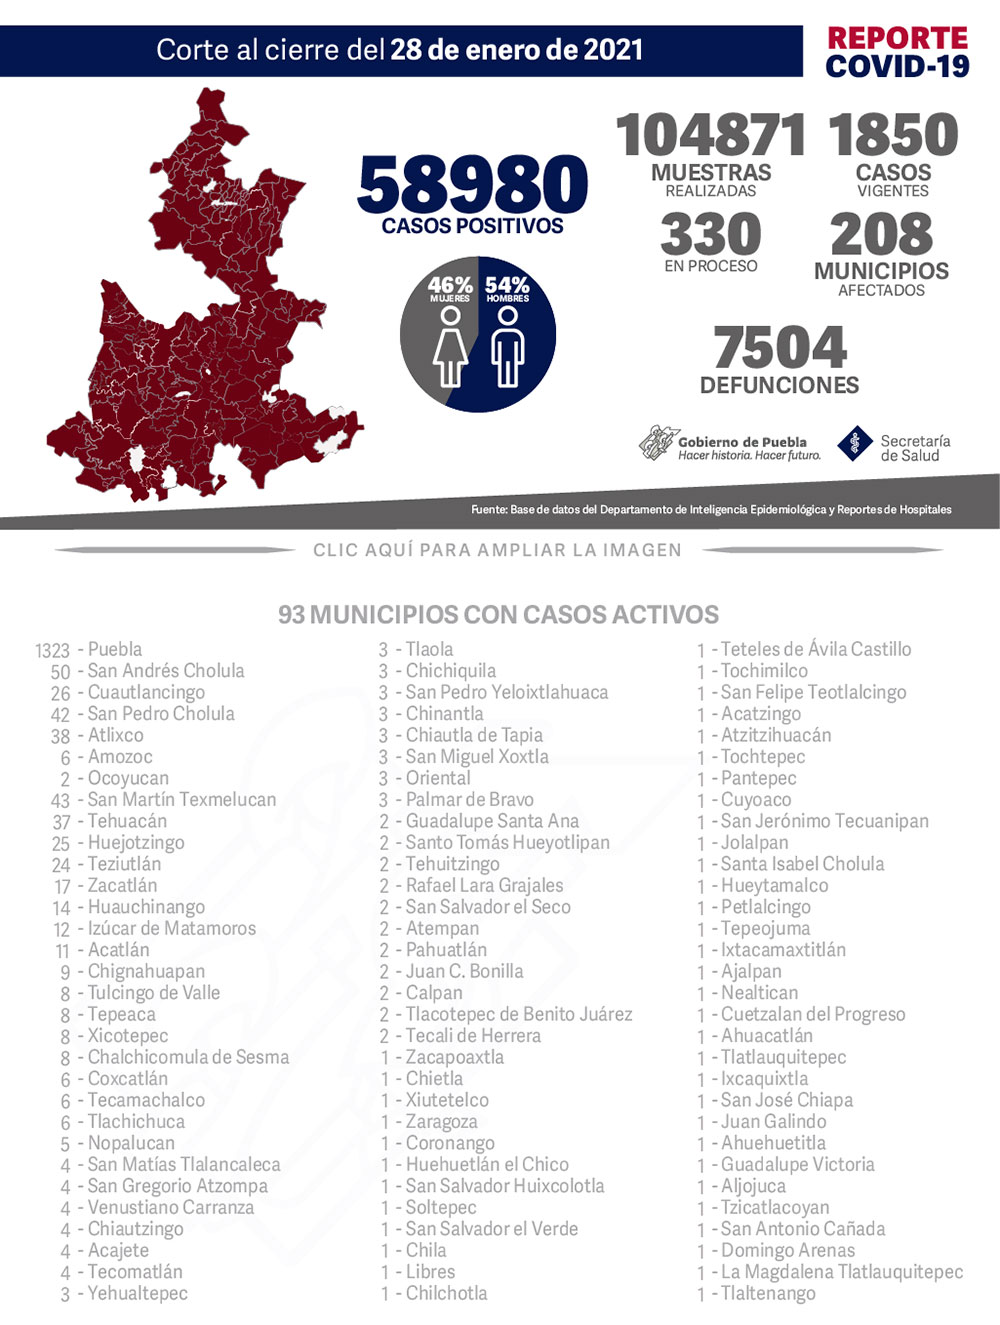 Reporte COVID-19, 28 de enero de 2021:
58980 Casos positivos,
104871 Muestras realizadas,
1850 casos vigentes,
330 Muestras en proceso,
208 Municipios afectados,
7504 defunciones.